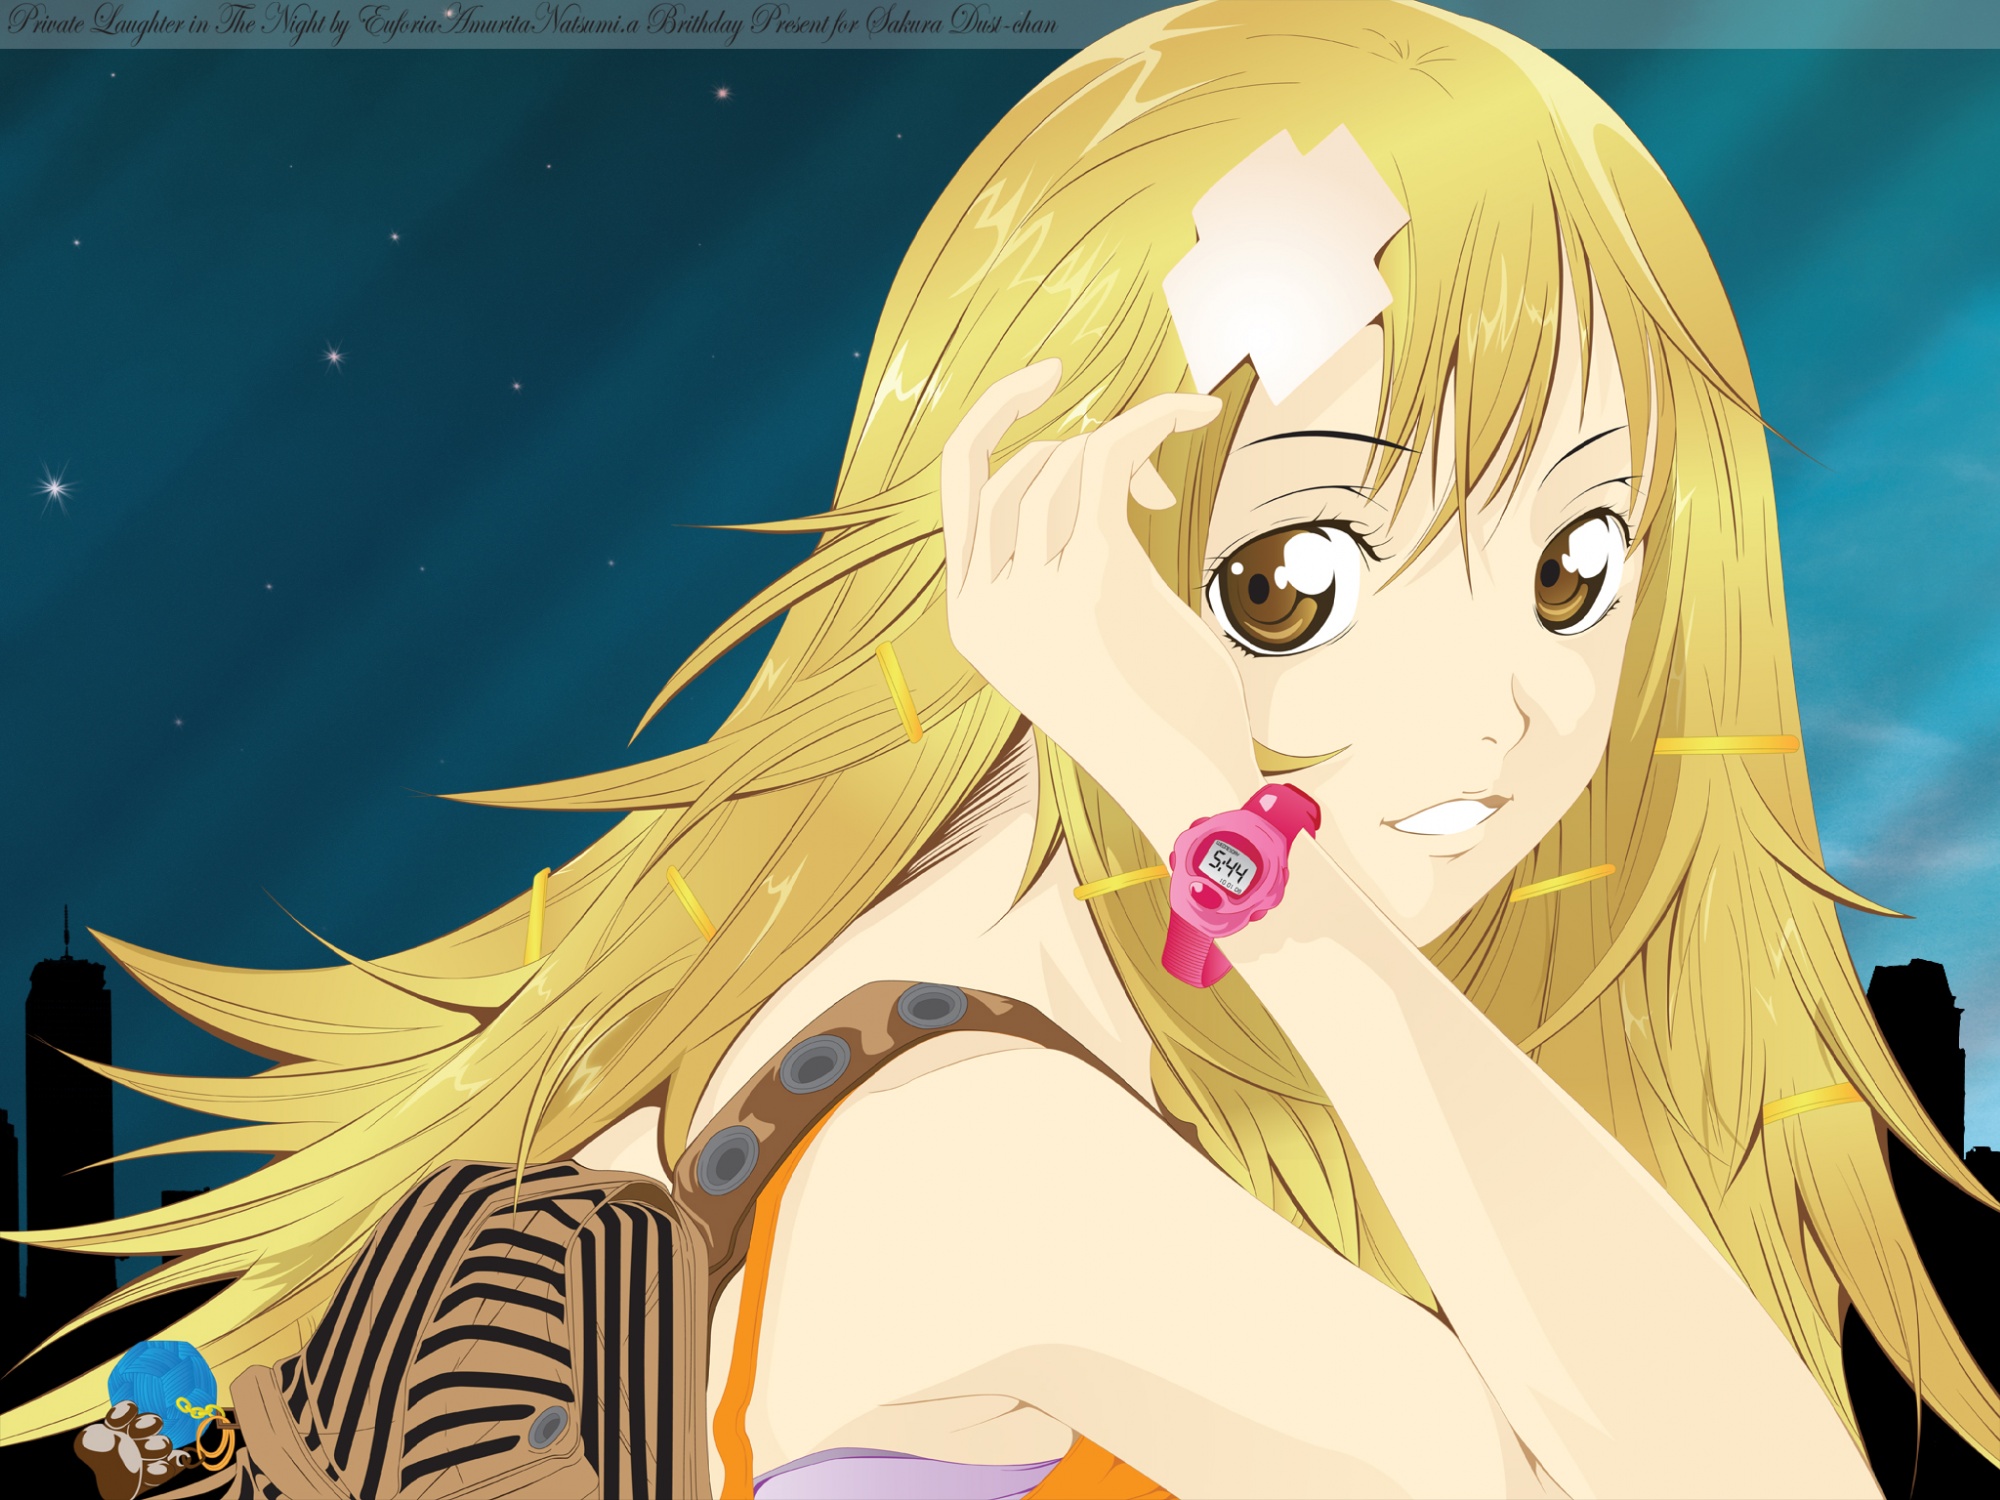 Kururu, an Anime character from Air Gear, in a captivating desktop wallpaper.